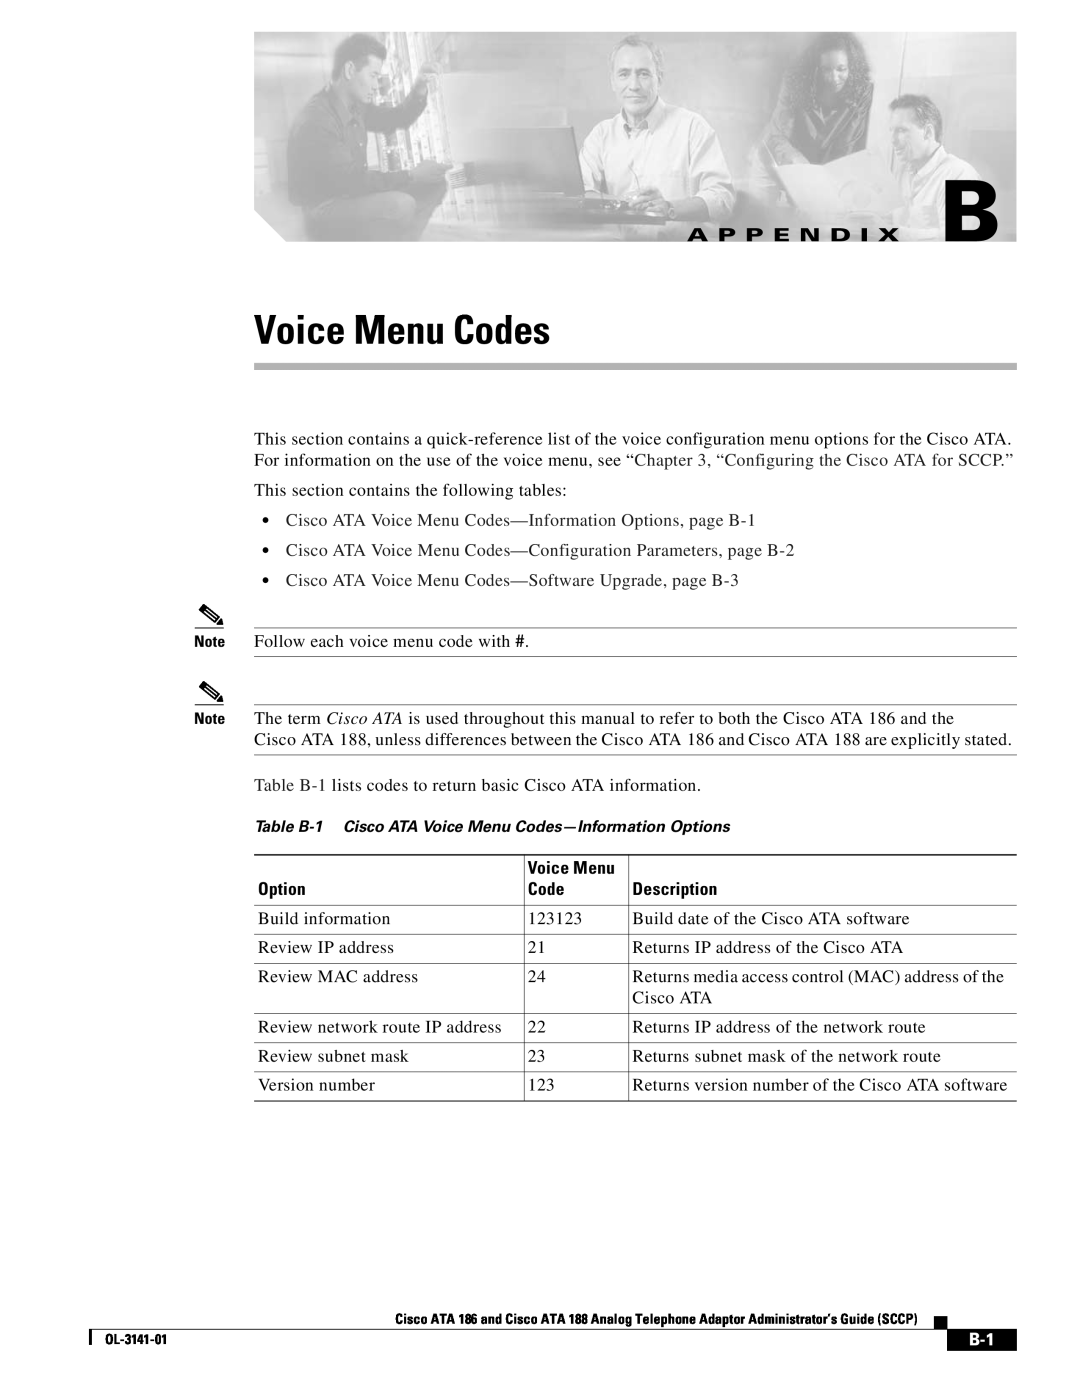 Cisco Systems ATA 188 manual A P P E N D I X B, Cisco ATA Voice Menu Codes-Information Options, page B-1, Description 